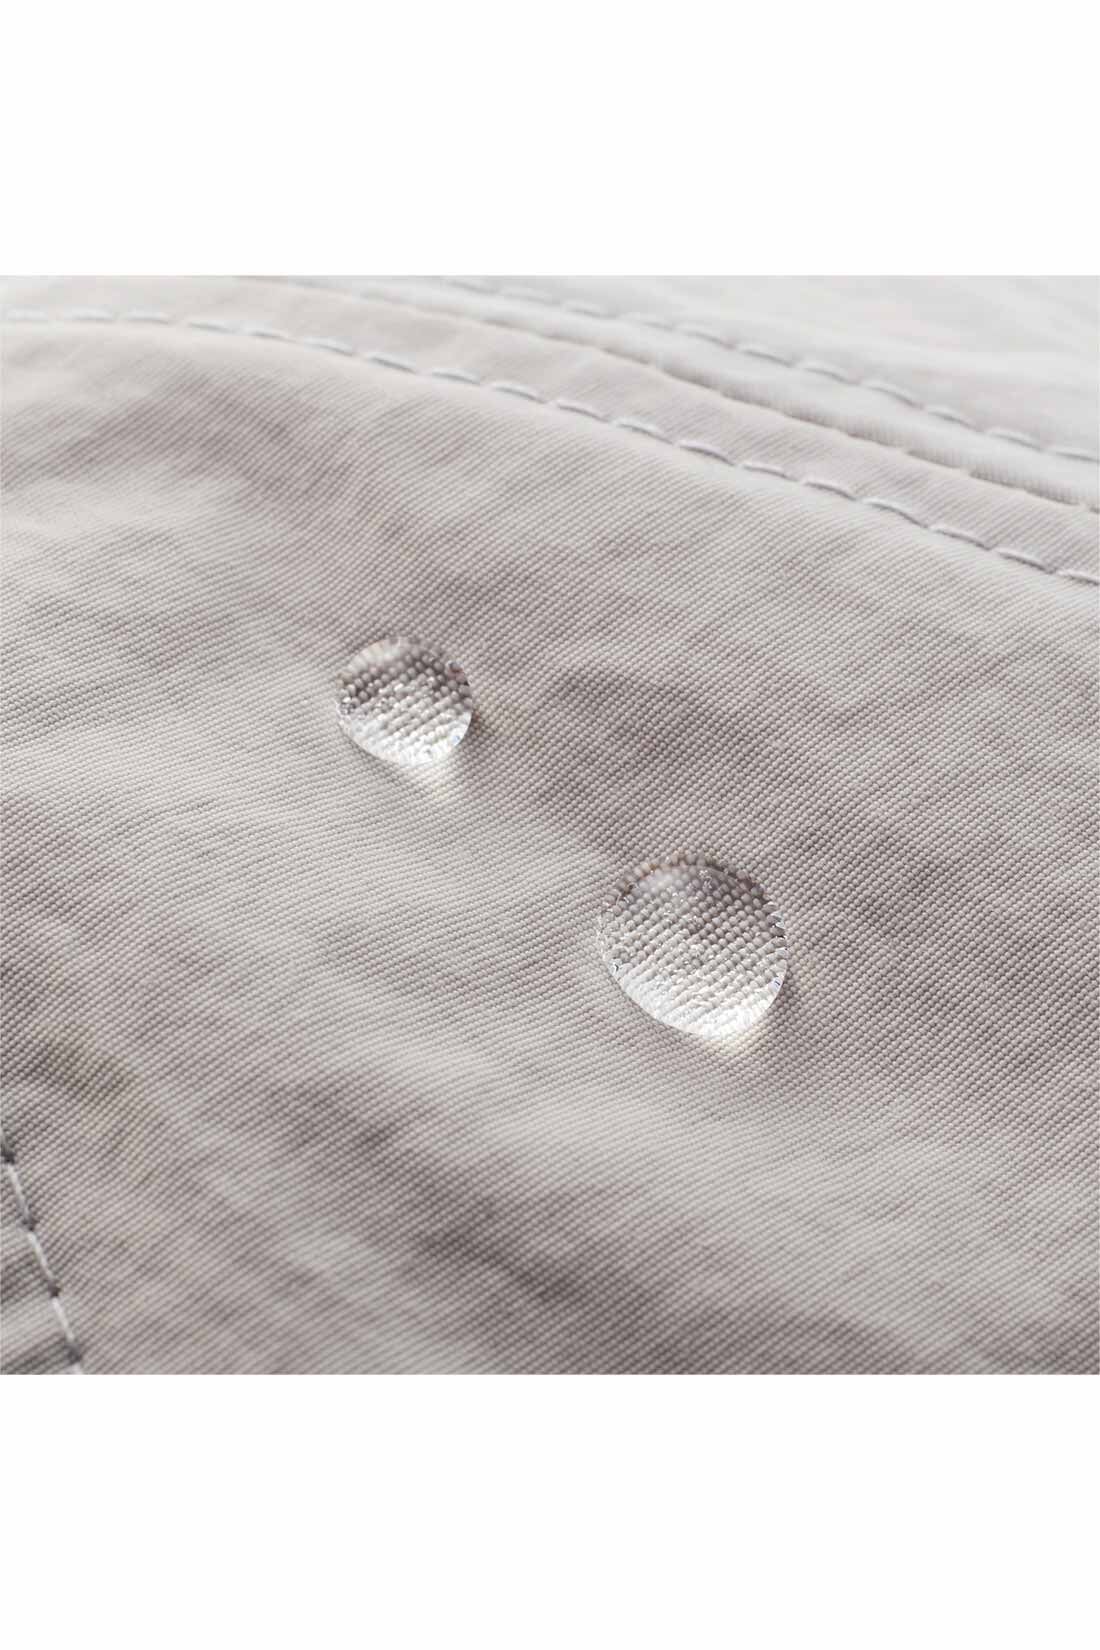 IEDIT|IEDIT[イディット]　福田麻琴さんコラボ 撥水（はっすい）＆UVカットの大人のためのキャップ〈ライトグレー〉|軽くドライな着用感の、UVカット＆撥水ナイロン素材。